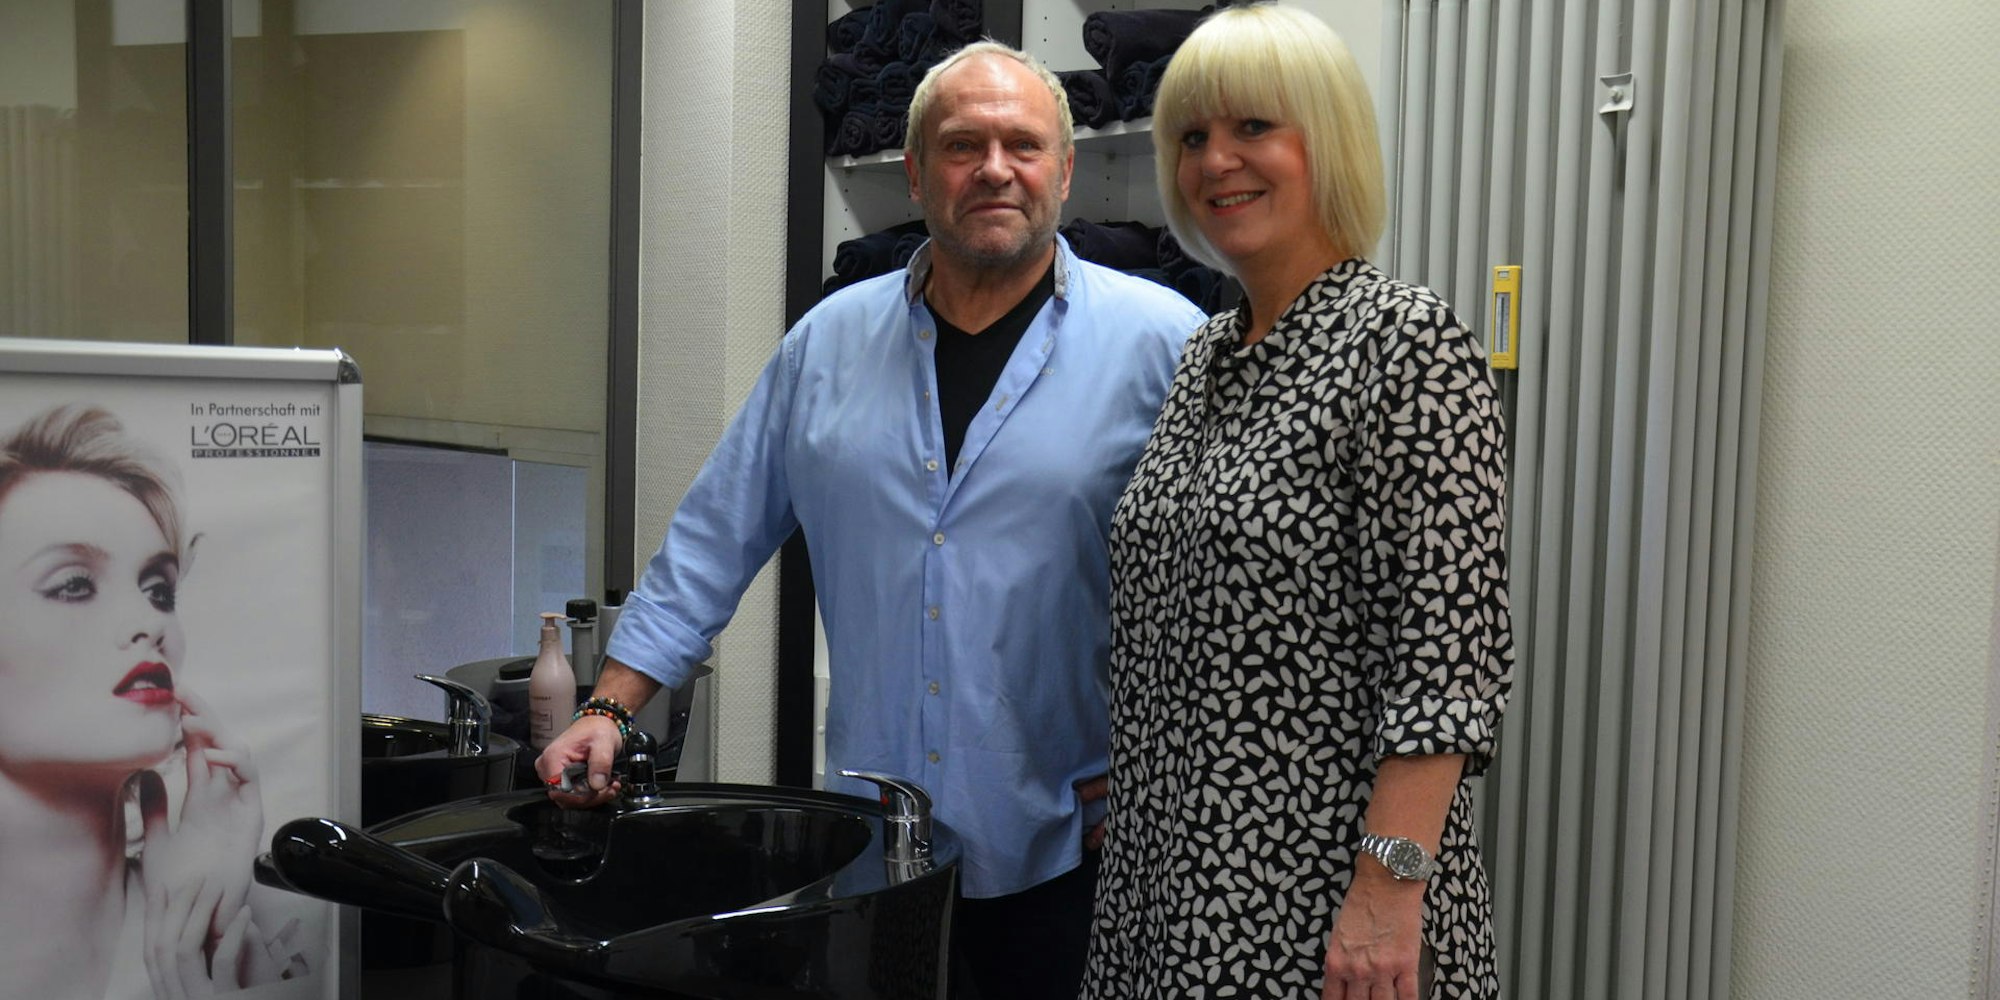 Karl Nonn und seine Frau Karin betreiben seit mehr als drei Jahrzehnten einen Friseursalon in Brühl-Badorf. Sie ärgert das Vorgehen der Handwerkskammer.